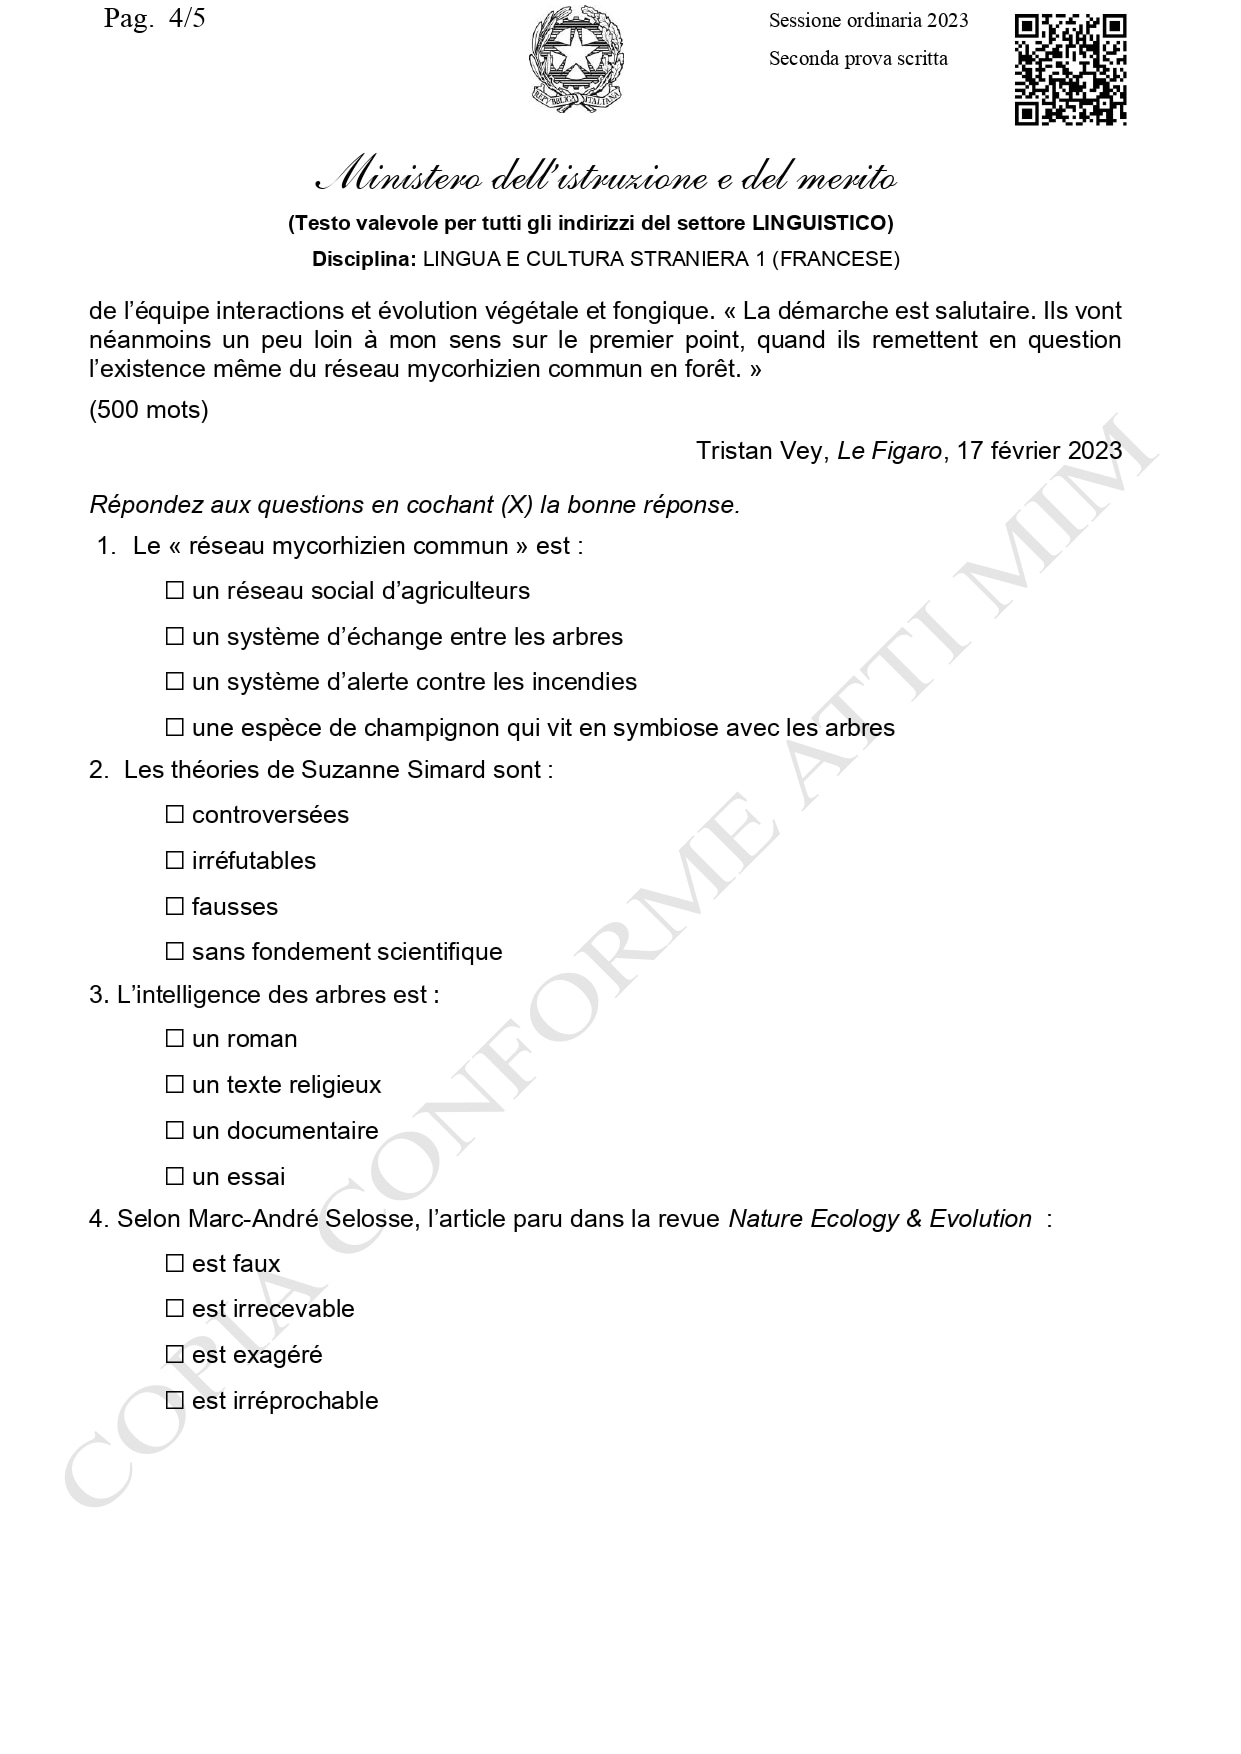 Traccia ufficiale francese, liceo linguistico seconda prova 2023